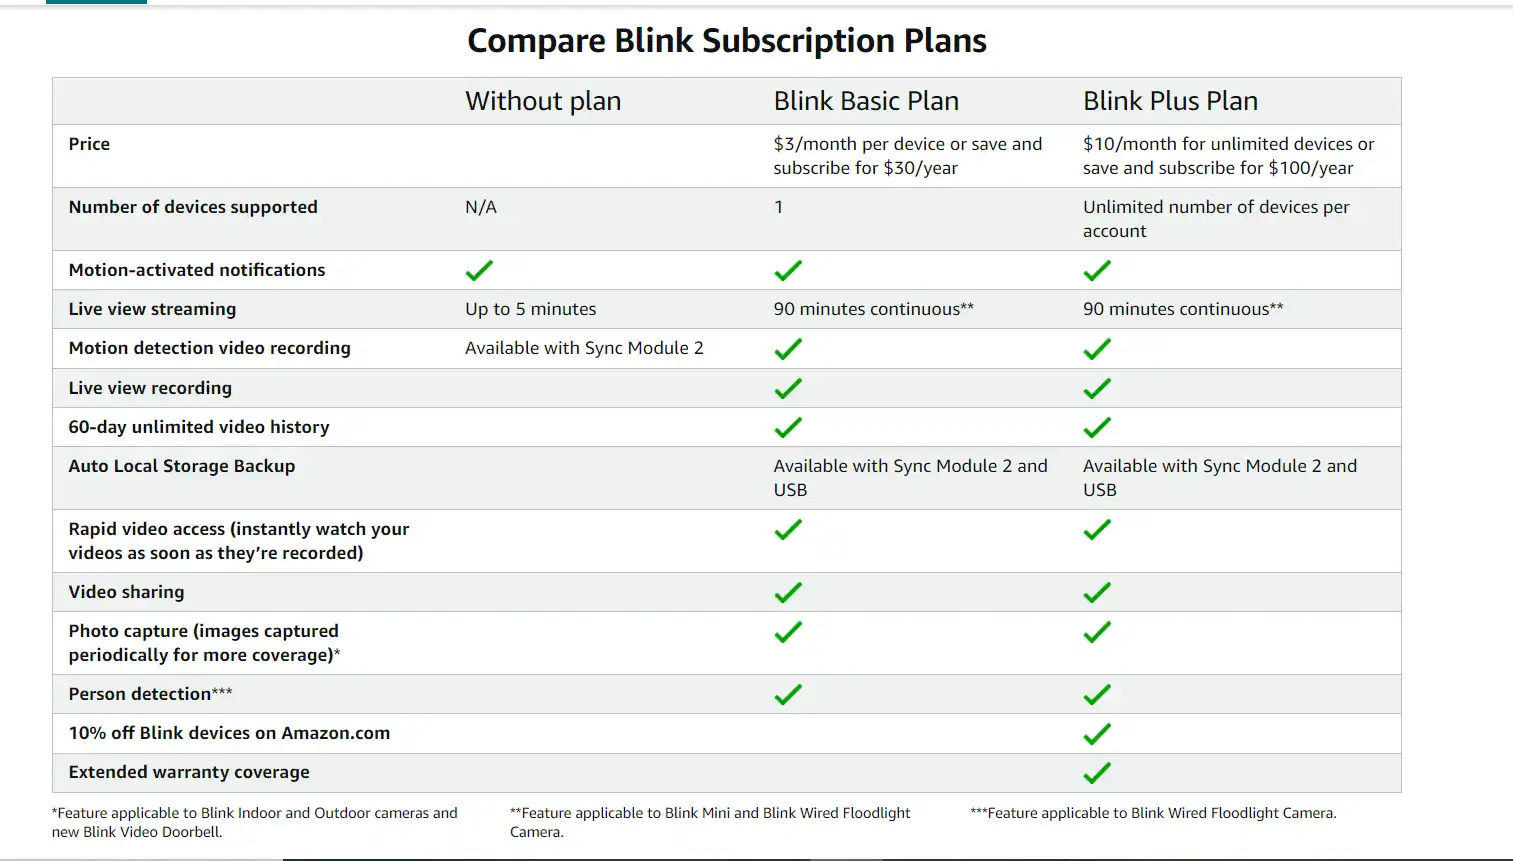 Subscription plan details of Blink